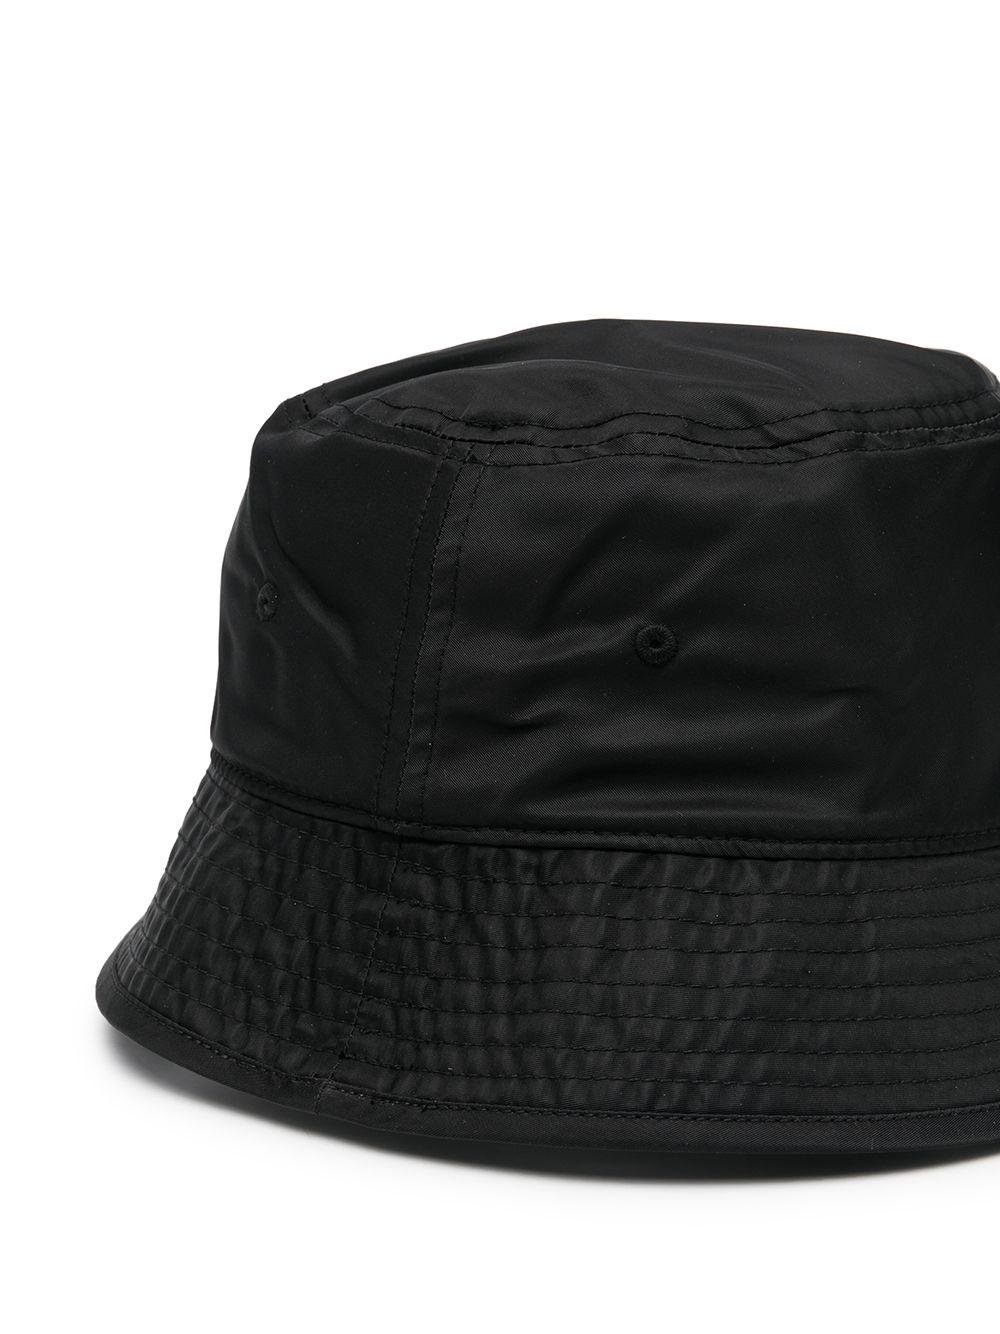 BOSS by HUGO BOSS Logo Patch Bucket Hat in Black for Men | Lyst